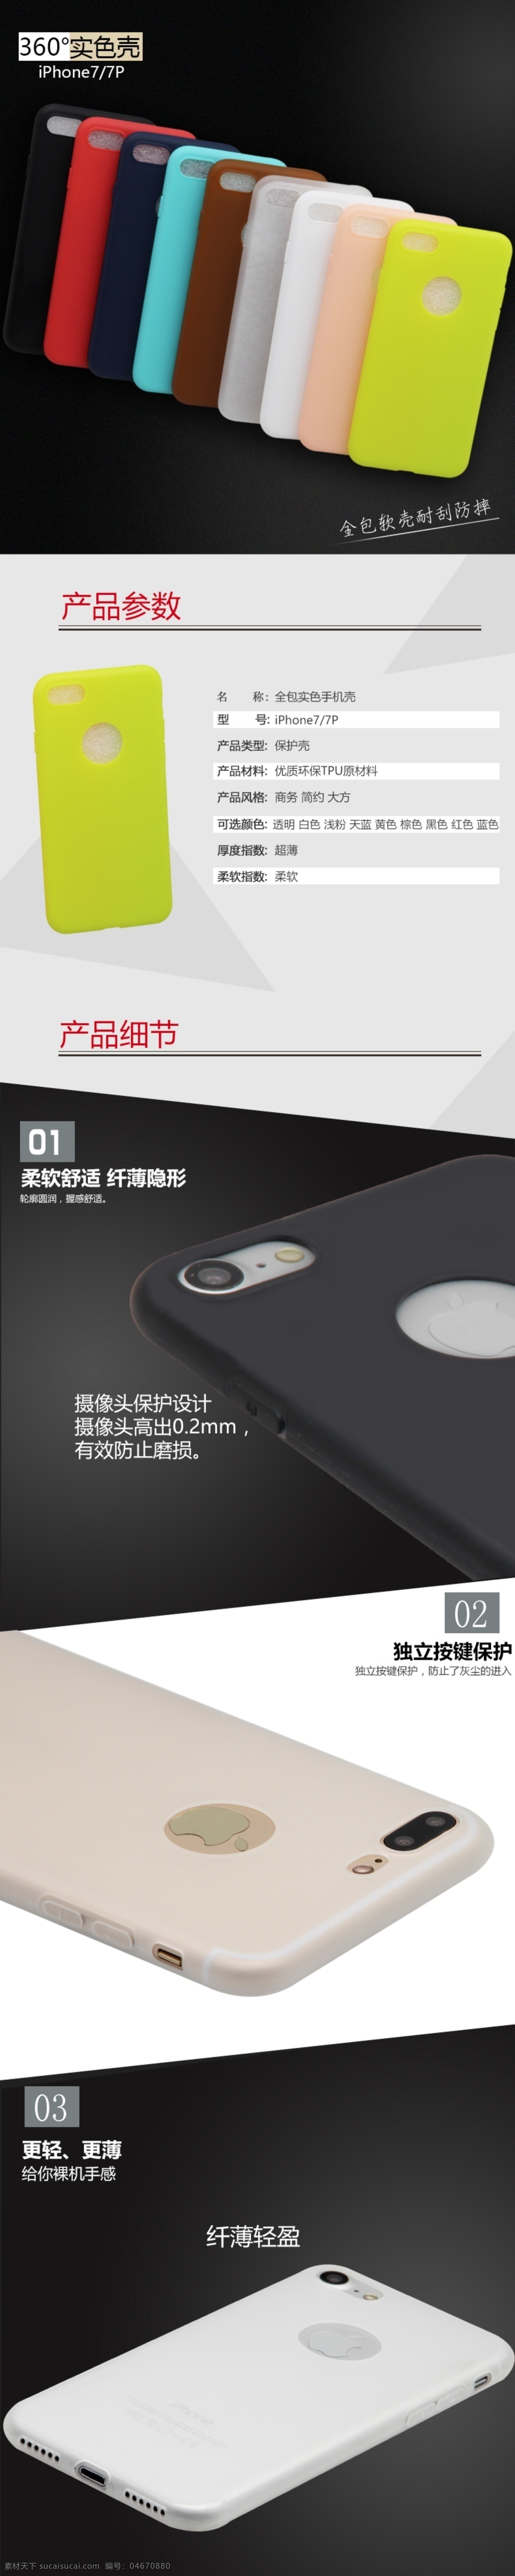 iphone7 实 色 壳 实色手机壳 手机壳详情 详情版 黑色